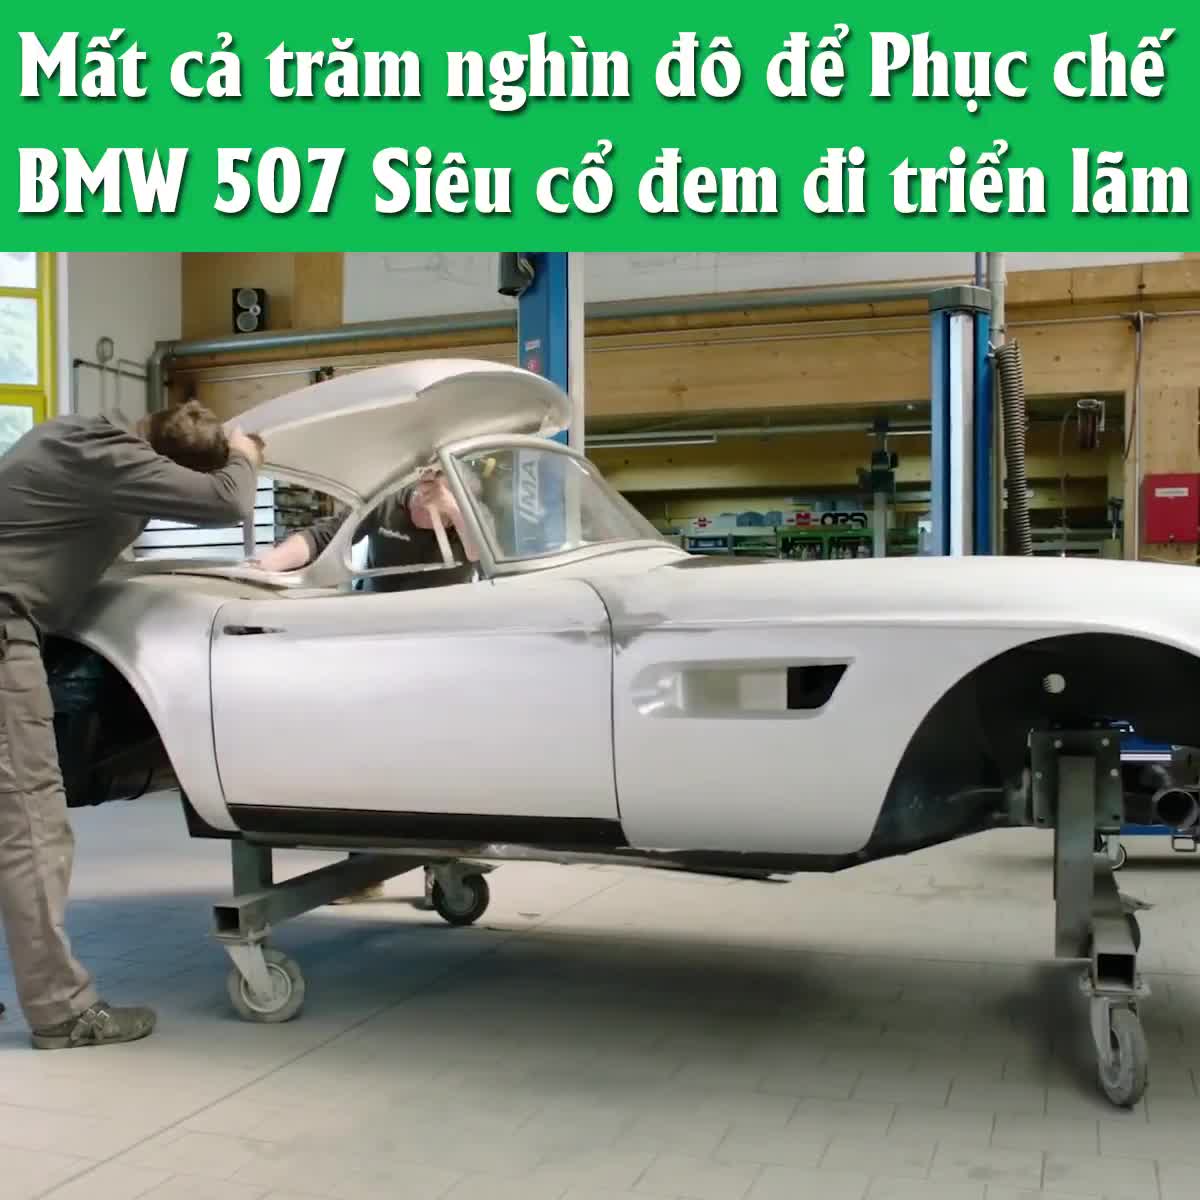 Kỳ công phục chế chiếc BMW cổ